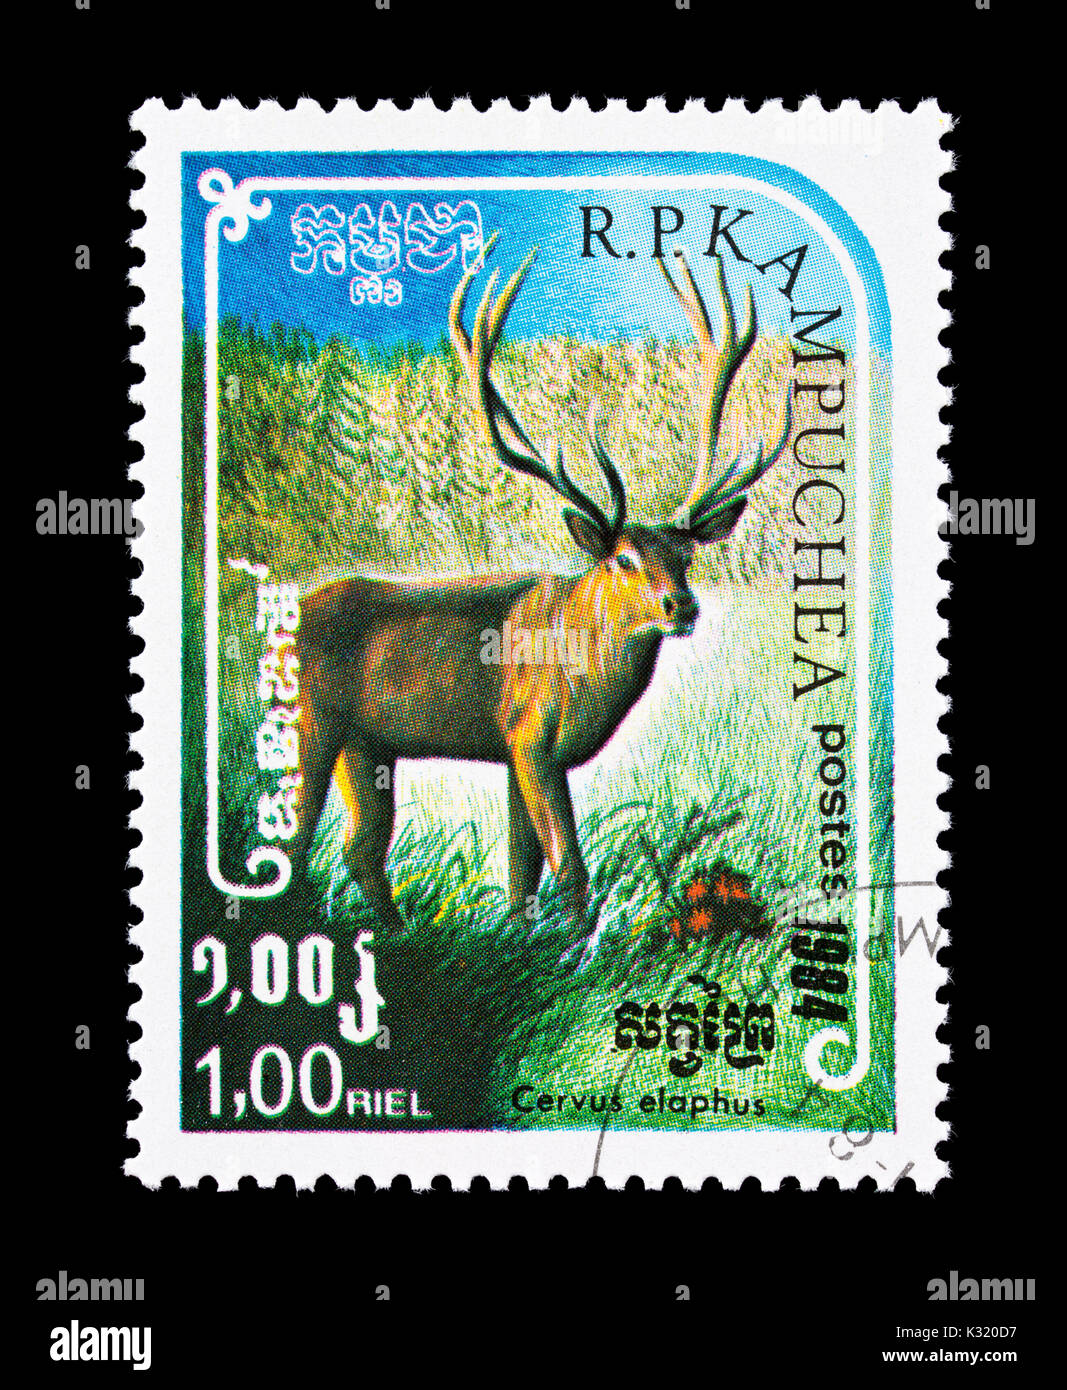 Timbre-poste du Cambodge (Kampuchea) représentant un red deer (Cervus elaphus) Banque D'Images